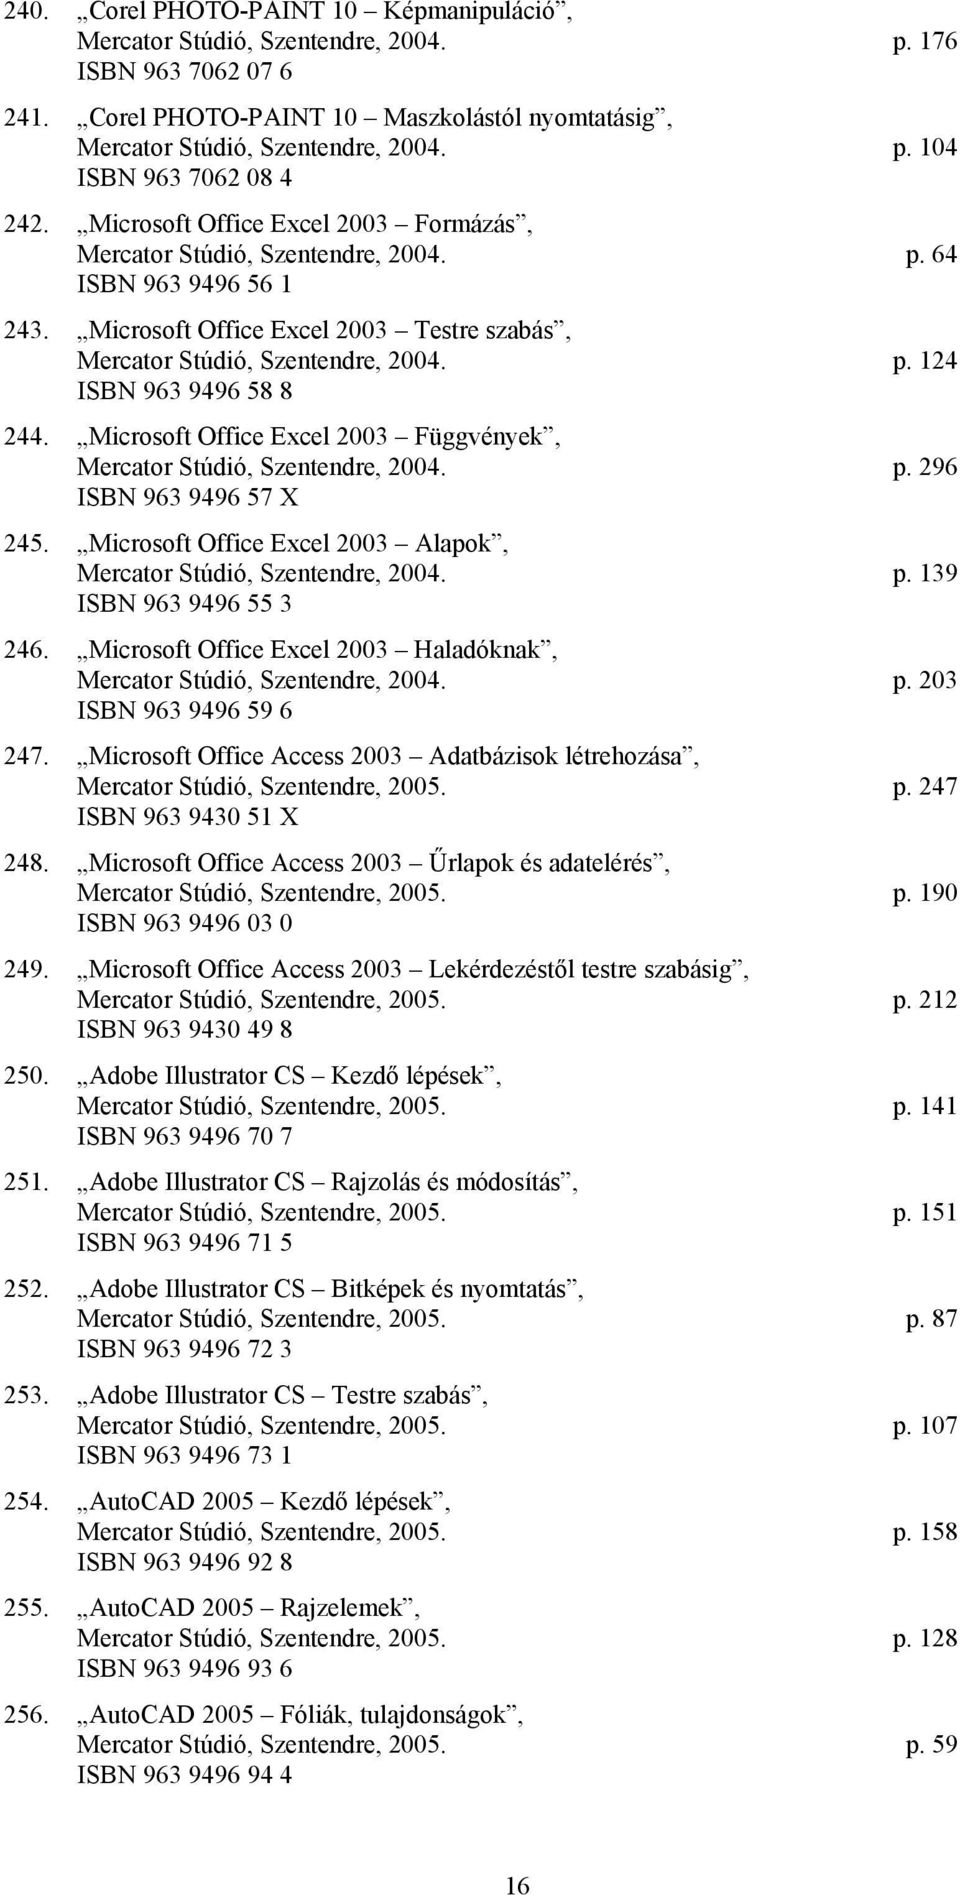 Microsoft Office Excel 2003 Függvények, Mercator Stúdió, Szentendre, 2004. p. 296 ISBN 963 9496 57 X 245. Microsoft Office Excel 2003 Alapok, Mercator Stúdió, Szentendre, 2004. p. 139 ISBN 963 9496 55 3 246.